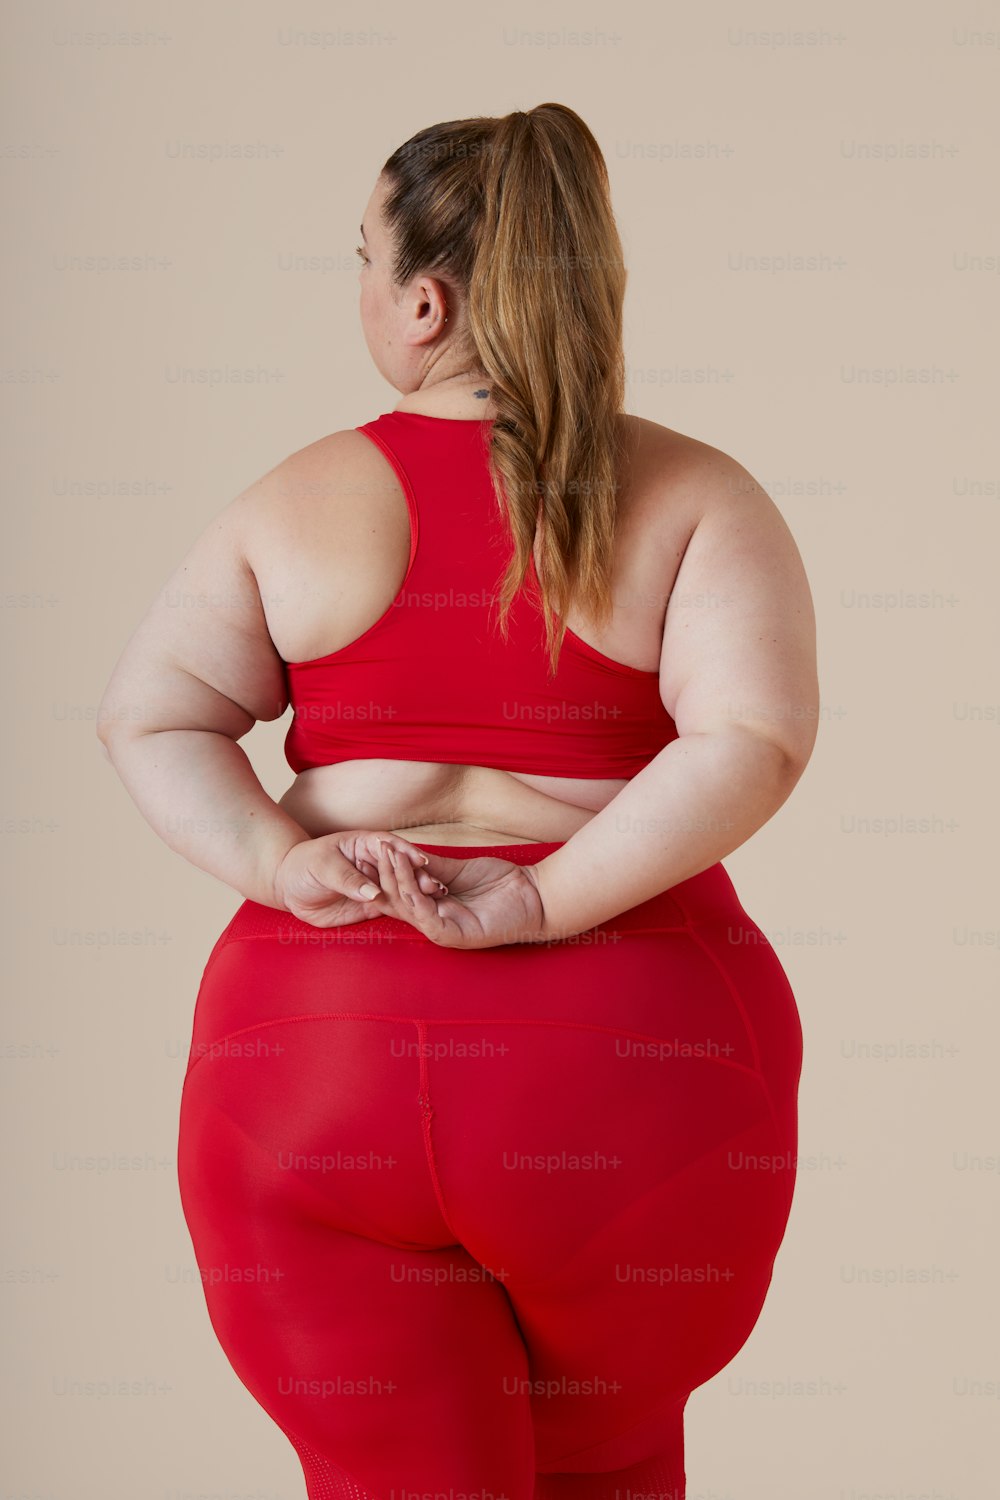 Una mujer con un top rojo y leggings